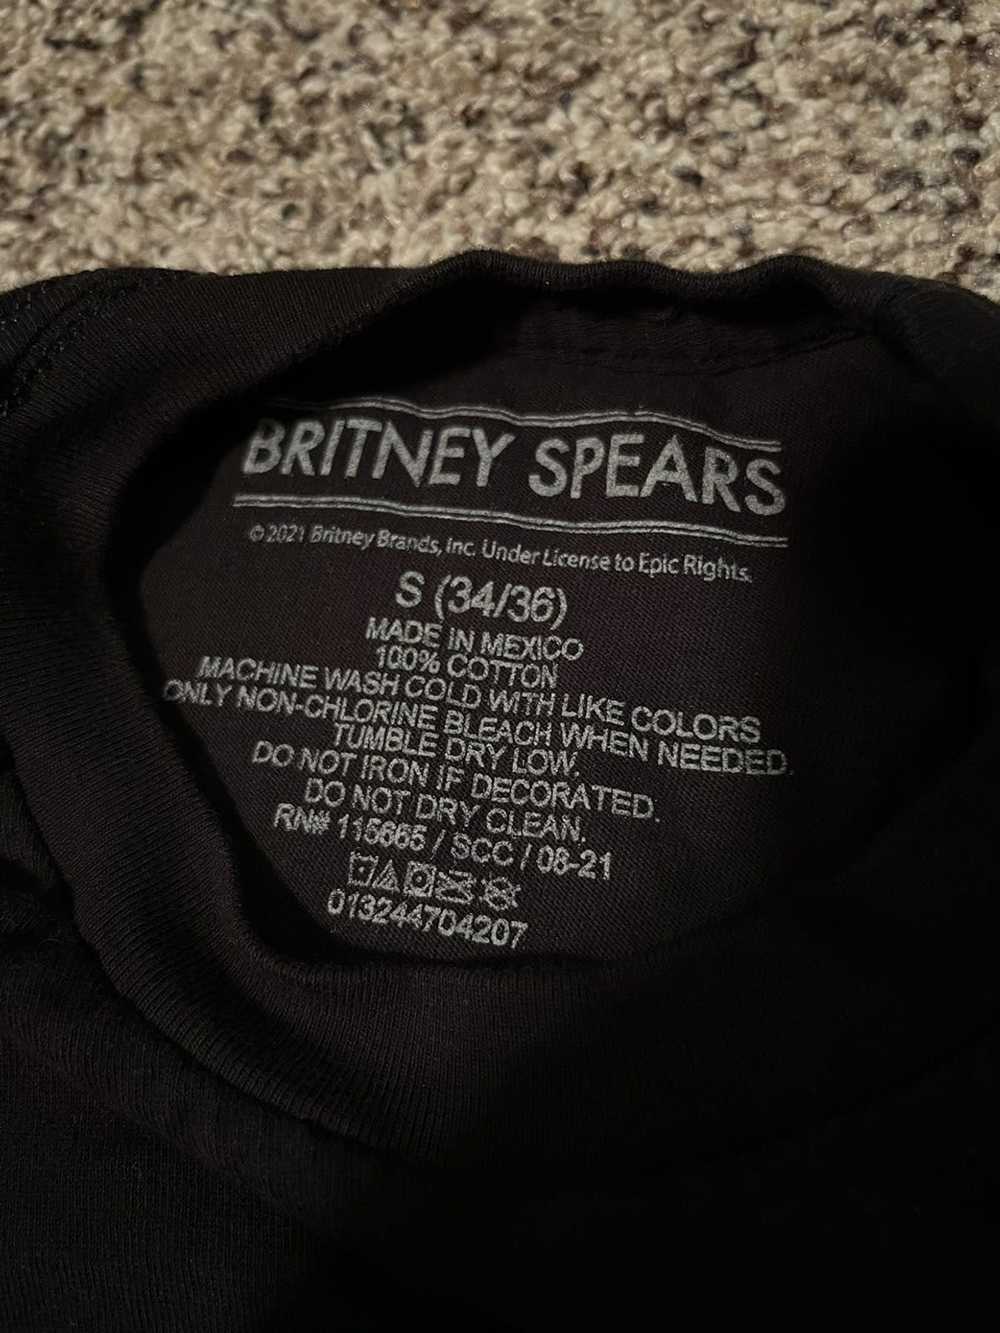 Vintage Britney Spears Shirt - image 2